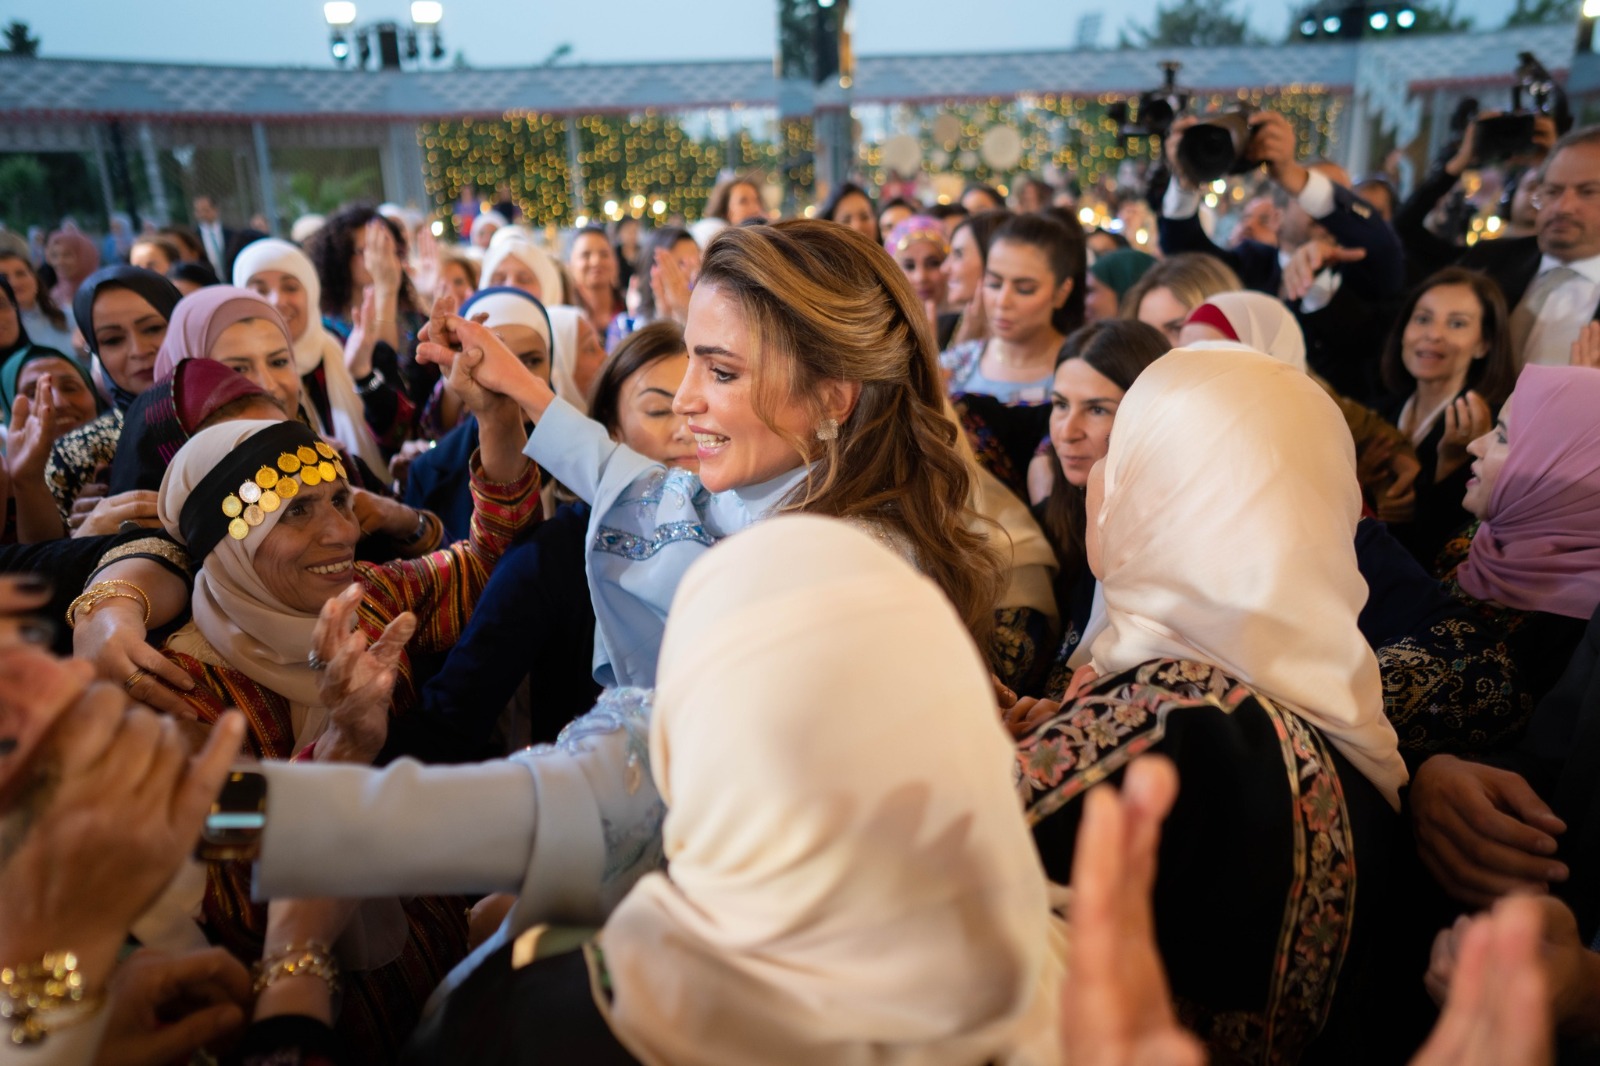 الملكة رانيا العبد الله ترقص وسط الحضور احتفاء بقرب زفاف نجلها